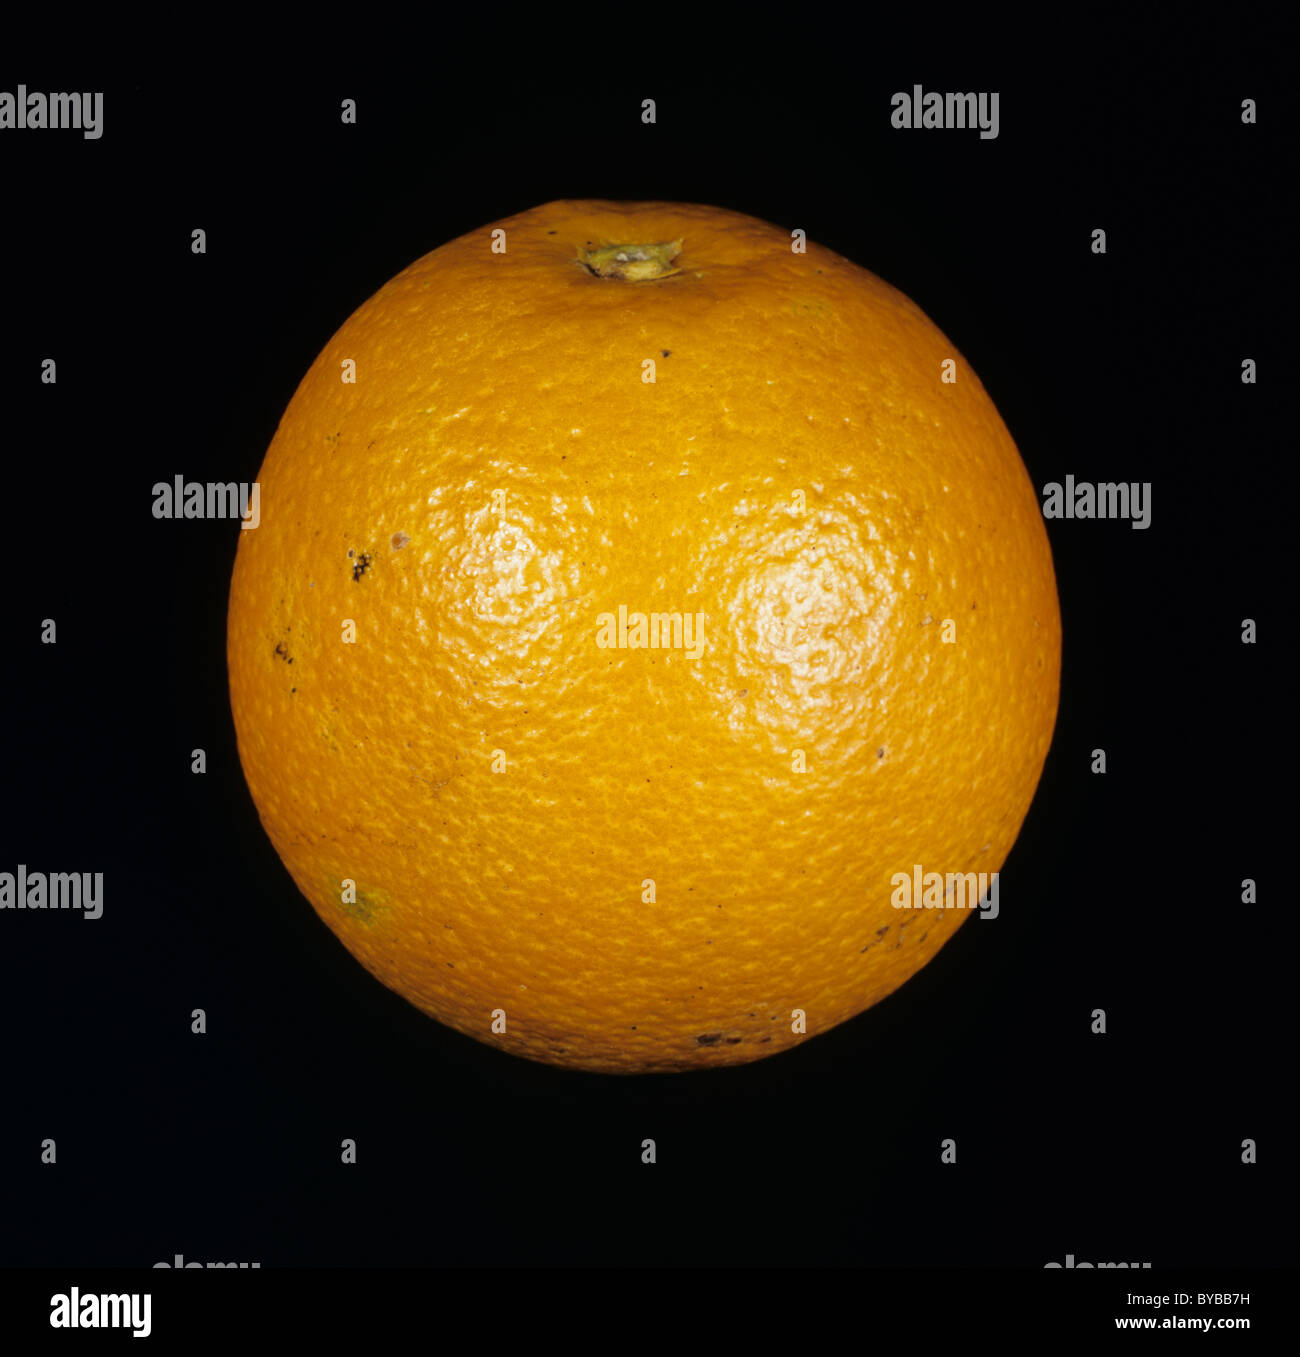 Gesamten Zitrusfrucht orange Sorte Ananas Stockfoto